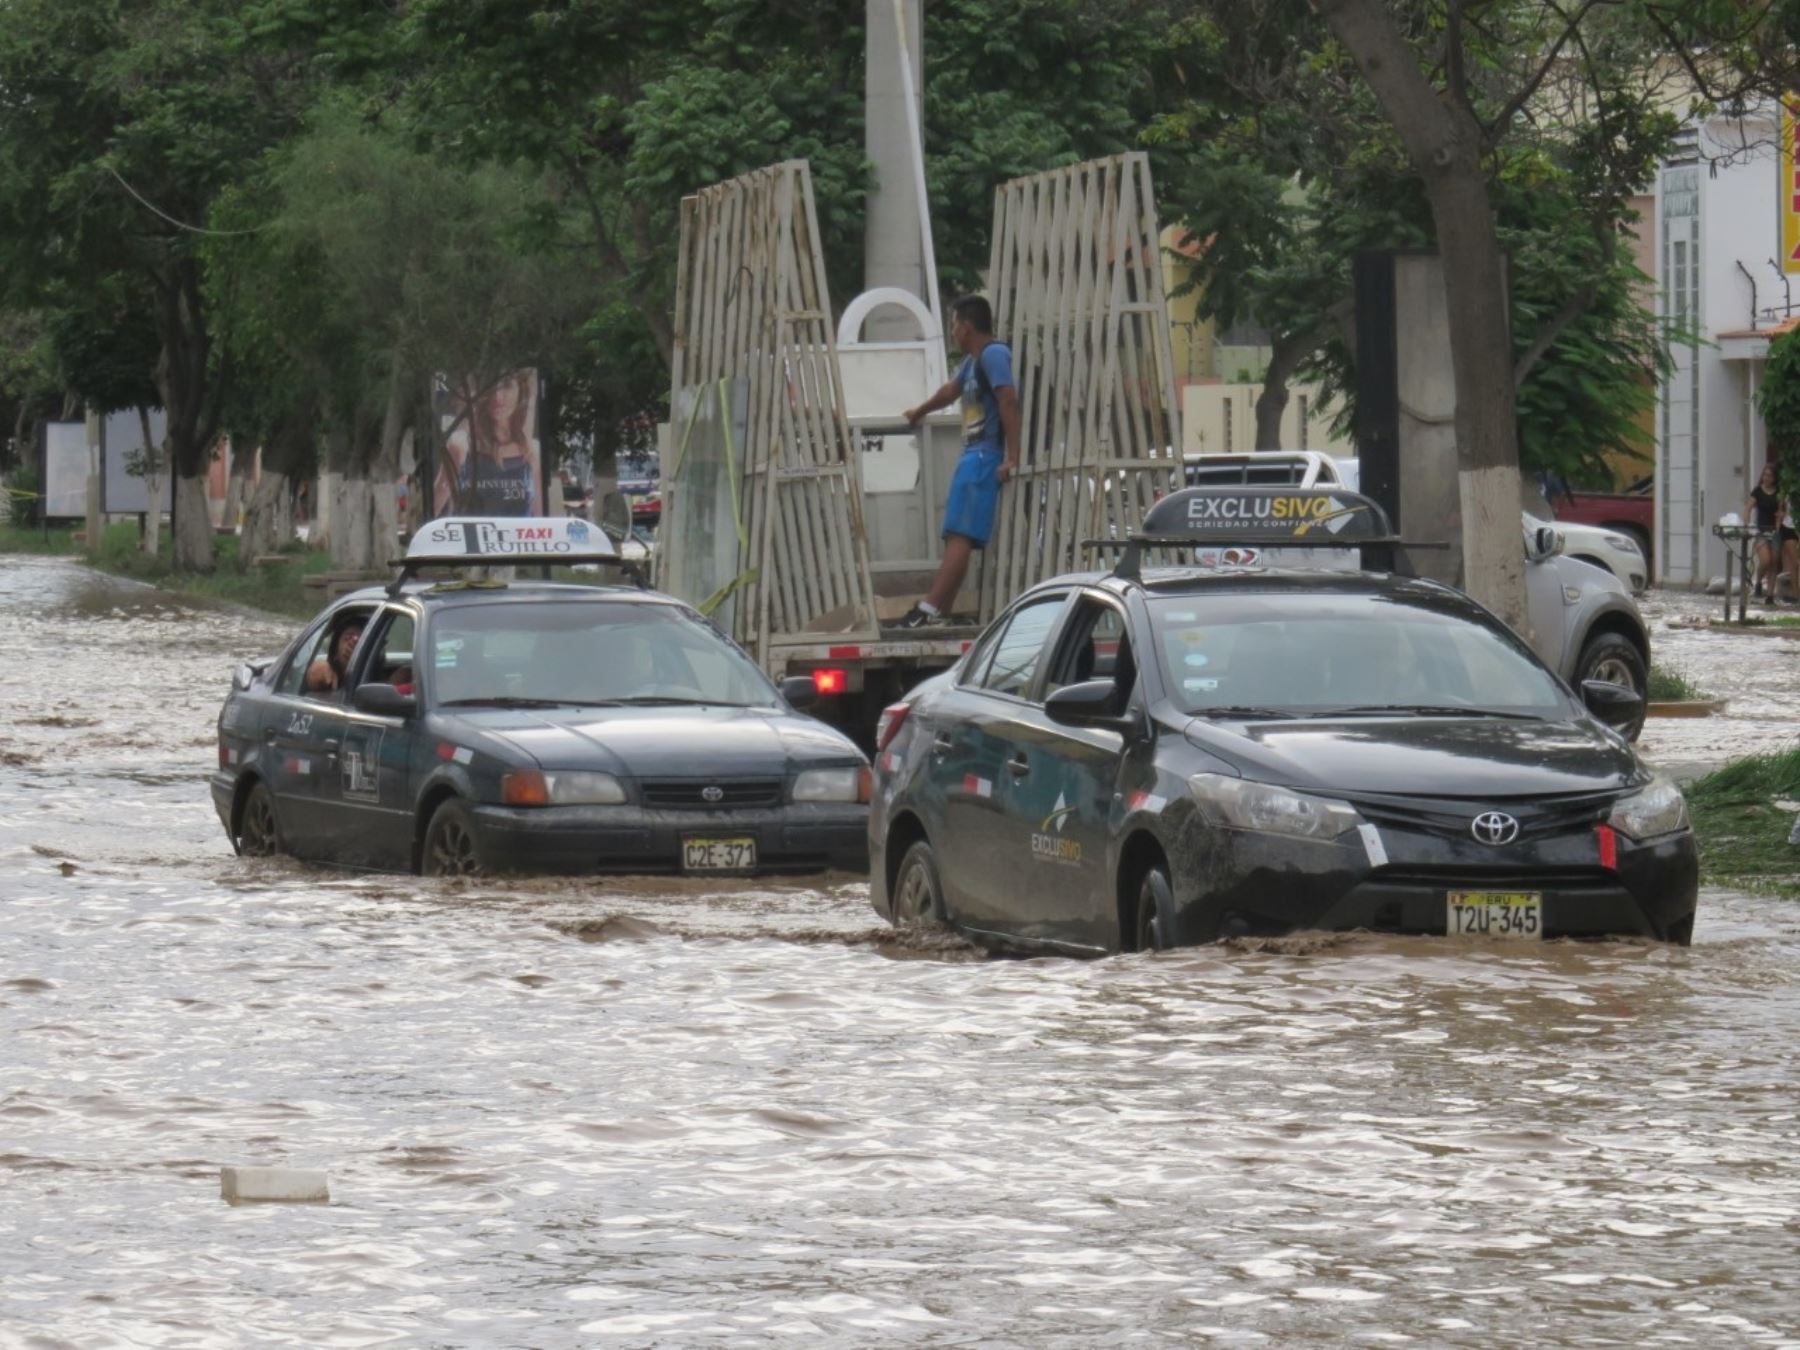 Las fuertes lluvias que se registran en la zona más alta de la provincia de Trujillo ha provocado un quinto huaico en la ciudad, afectando a miles de personas, especialmente en los distritos de El Porvenir, Trujillo, Florencia de Mora y Víctor Larco.